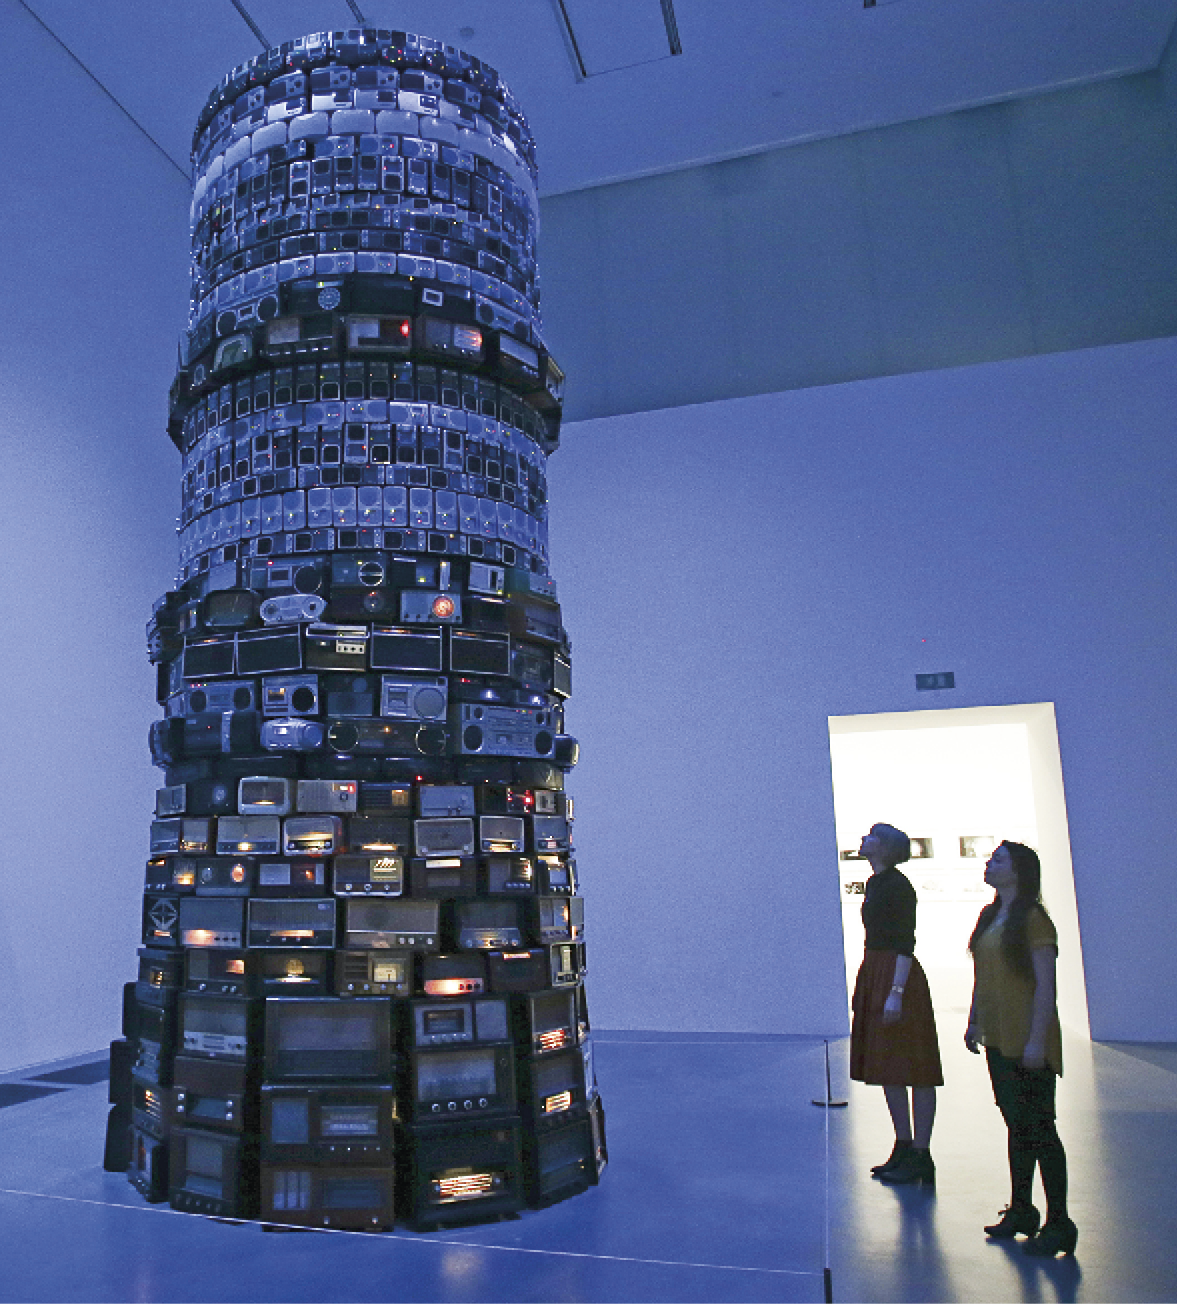 Fotografia. Duas mulheres observam uma instalação composta de uma grande torre construída com diferentes tipos de rádio, antigos e novos, no interior de um salão com paredes altas.